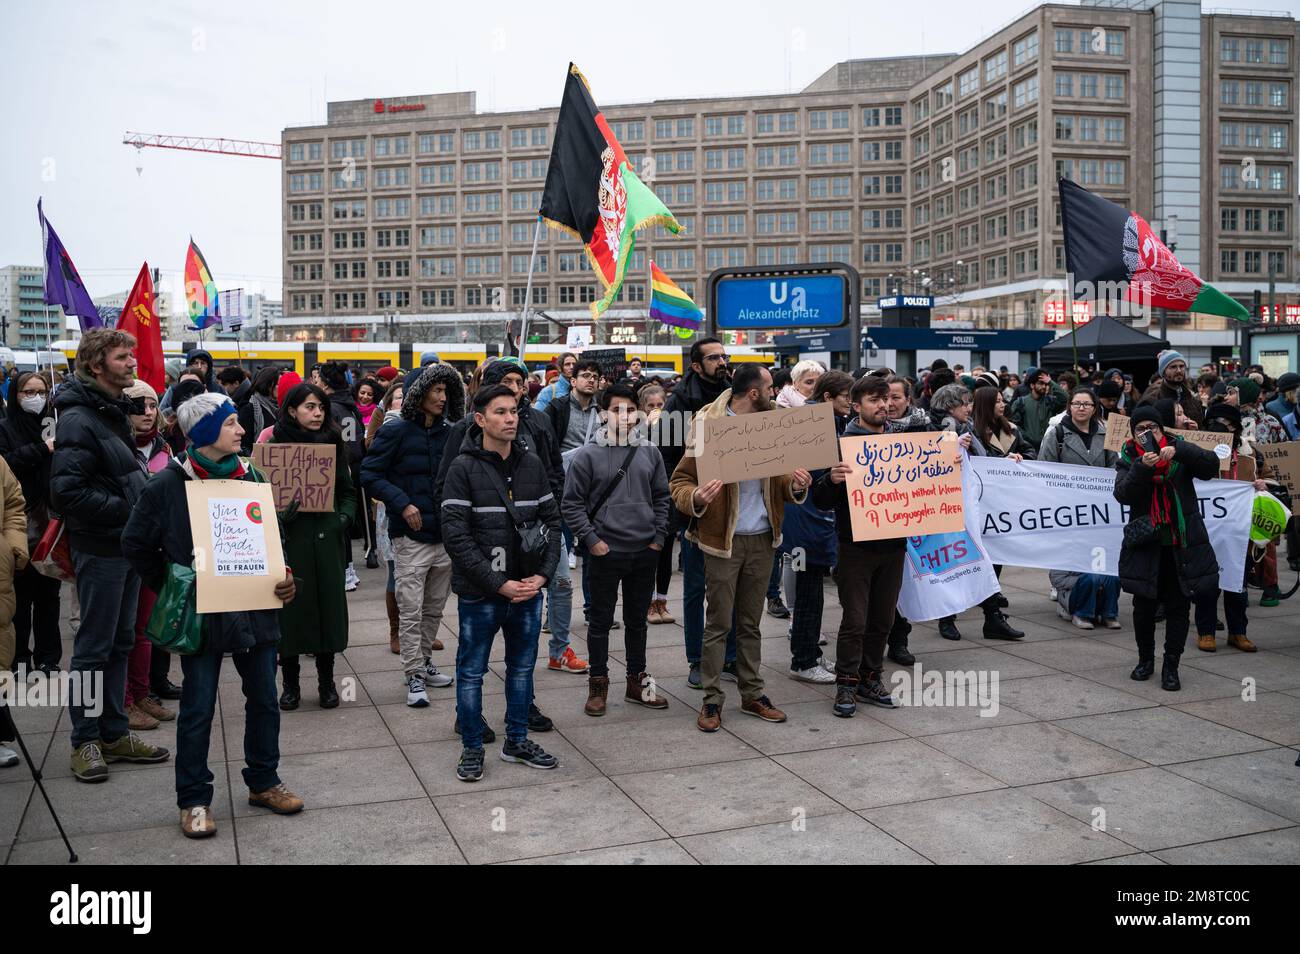 14.01.2023, Berlino, Germania, Europa - protesta ad Alexanderplatz per una maggiore solidarietà con l'Afghanistan, in particolare le donne con il motto "No ai talebani”. Foto Stock